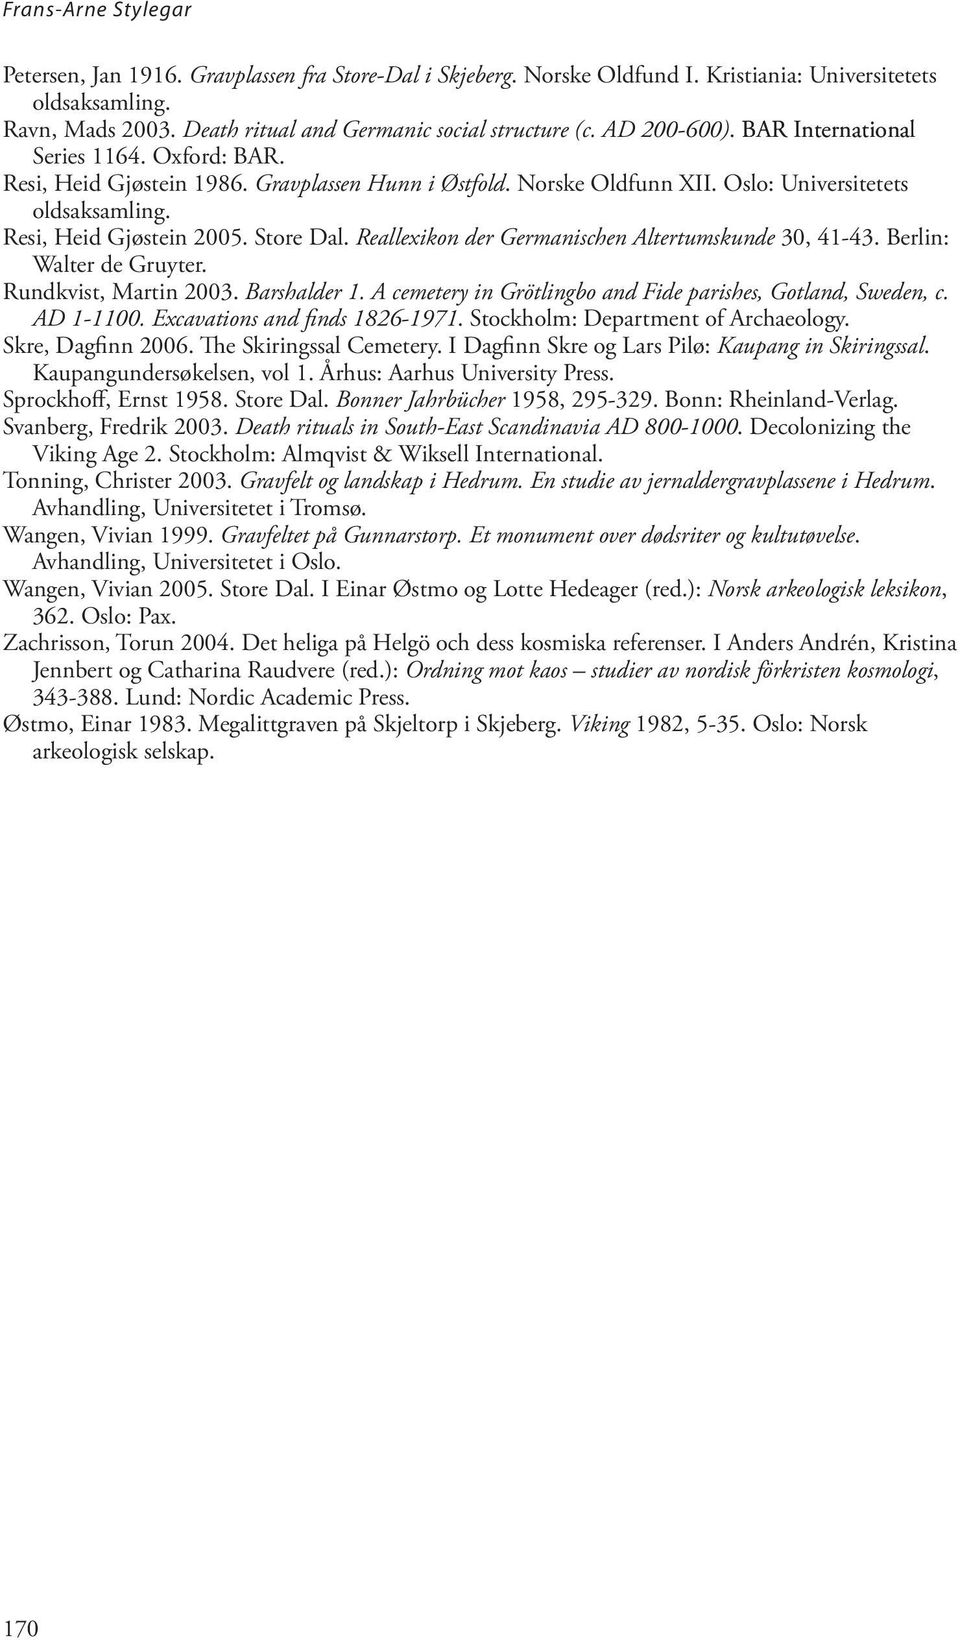 Reallexikon der Germanischen Altertumskunde 30, 41-43. Berlin: Walter de Gruyter. Rundkvist, Martin 2003. Barshalder 1. A cemetery in Grötlingbo and Fide parishes, Gotland, Sweden, c. AD 1-1100.